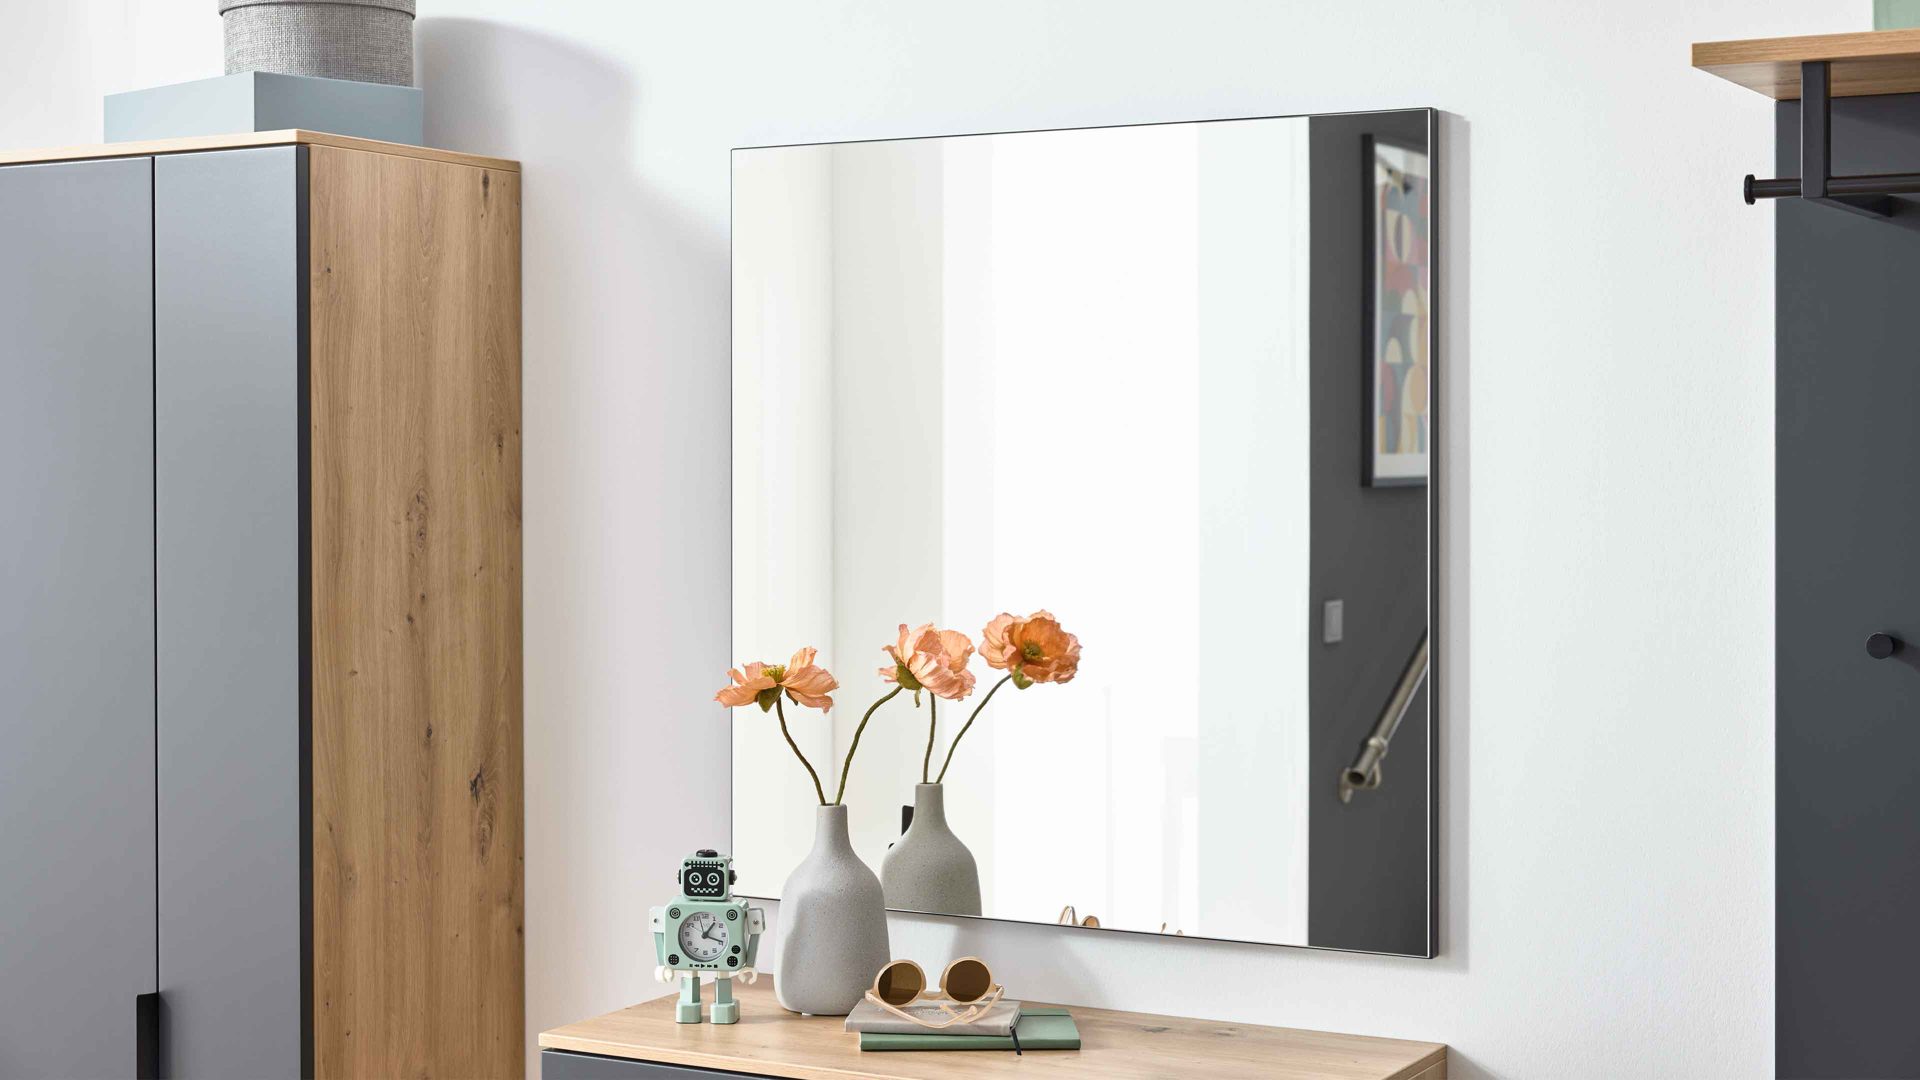 Wandspiegel Interliving aus Spiegel in Transparent Interliving Garderobe Serie 6012 - Spiegel INL-700 anthrazitfarbener Mattlack - ca. 80 x 82 cm